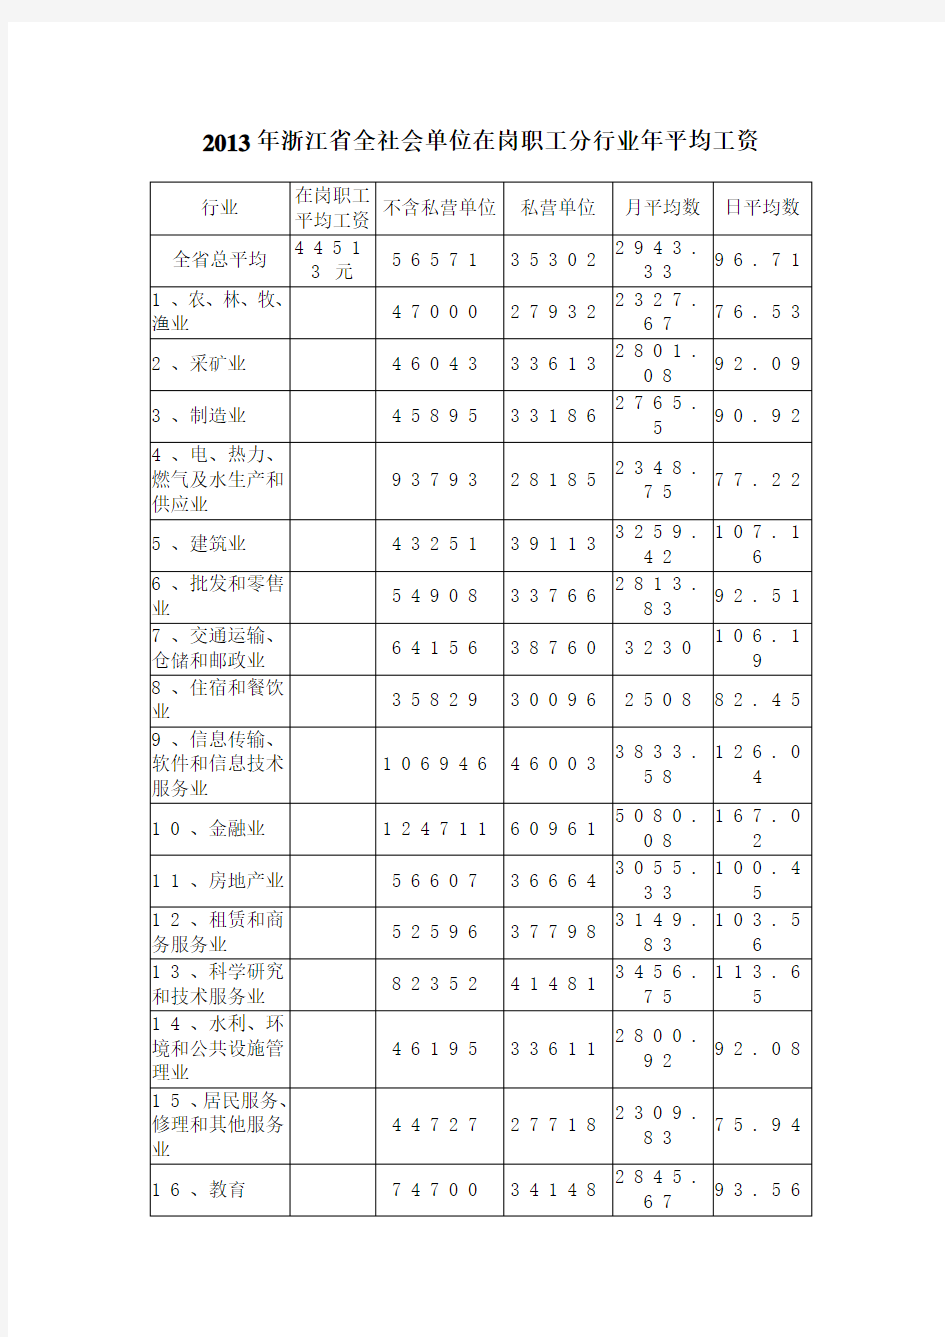 2013年浙江省全社会单位在岗职工分行业年平均工资